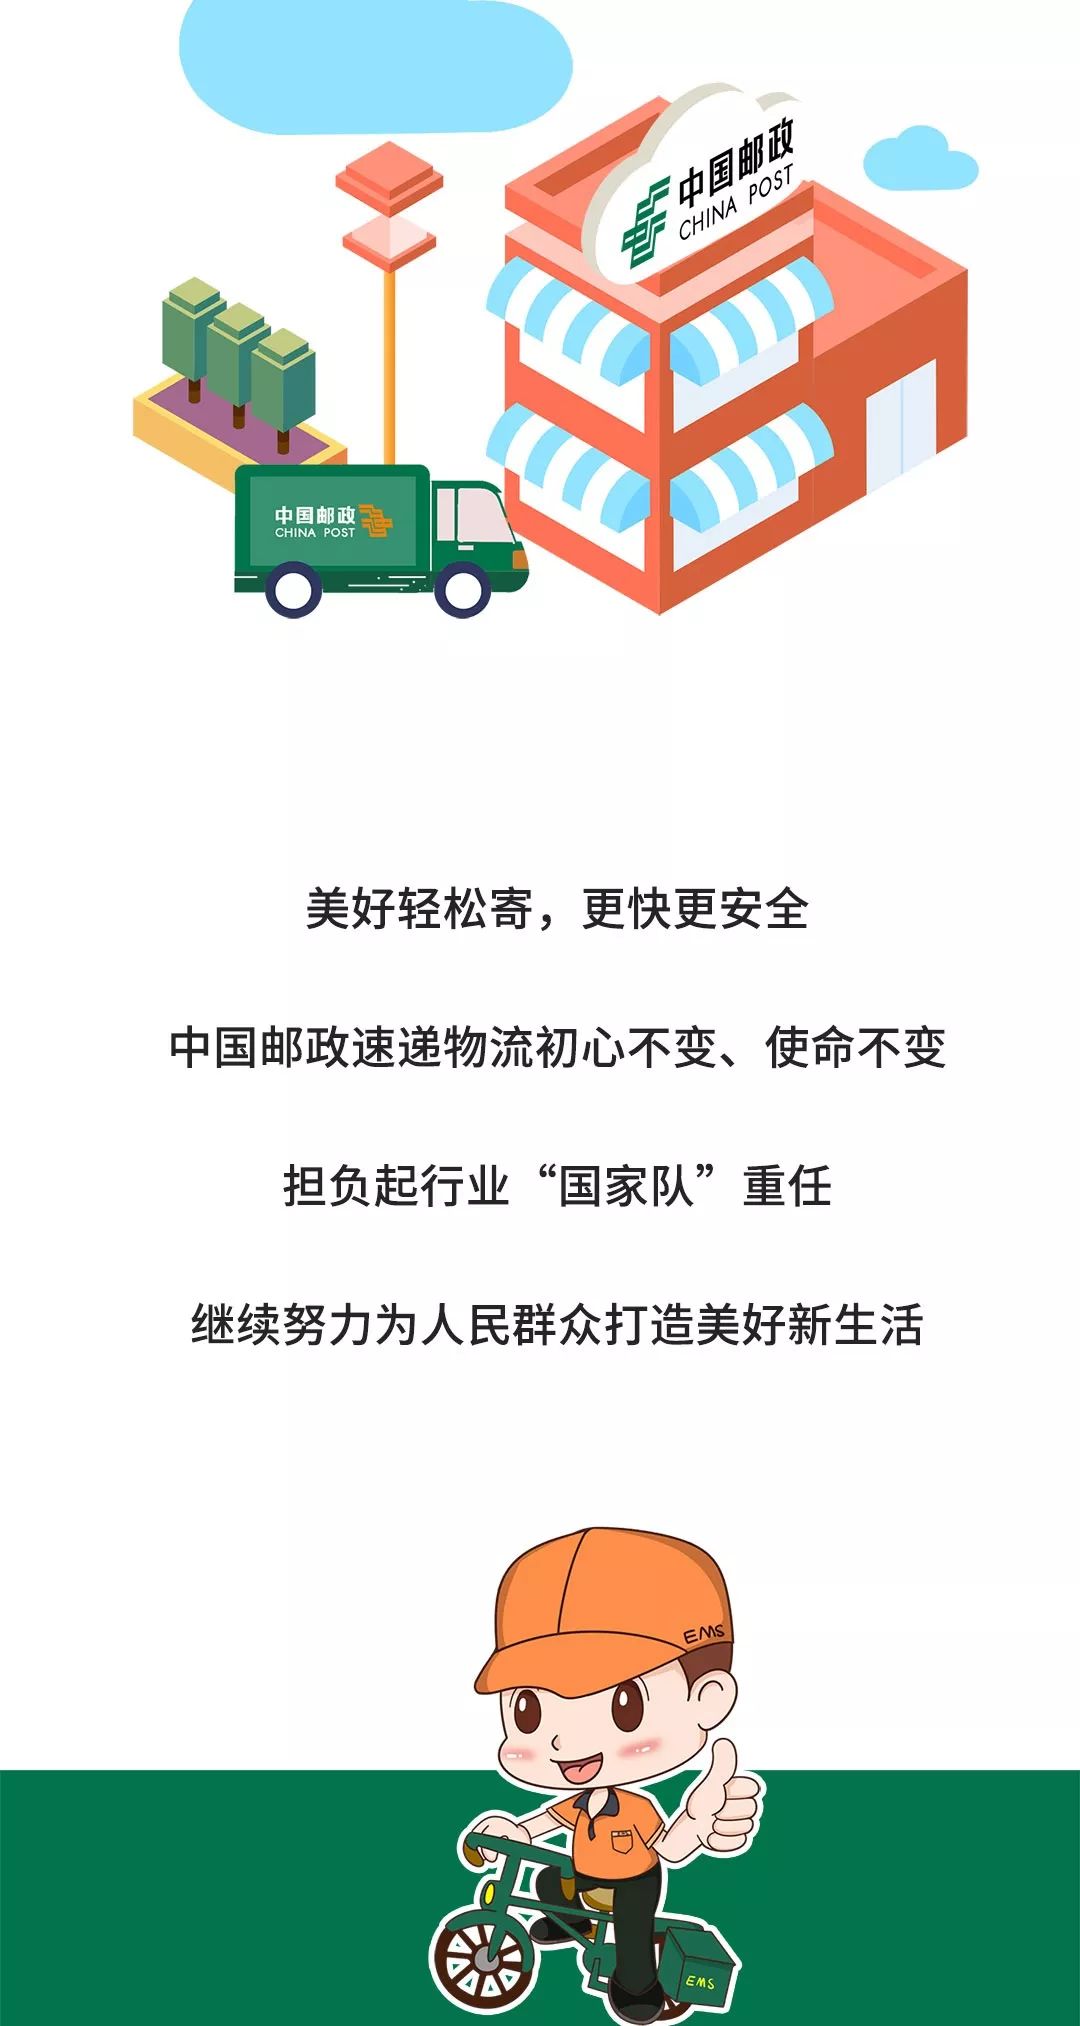 中国邮政寄递广告片首秀央视黄金时段